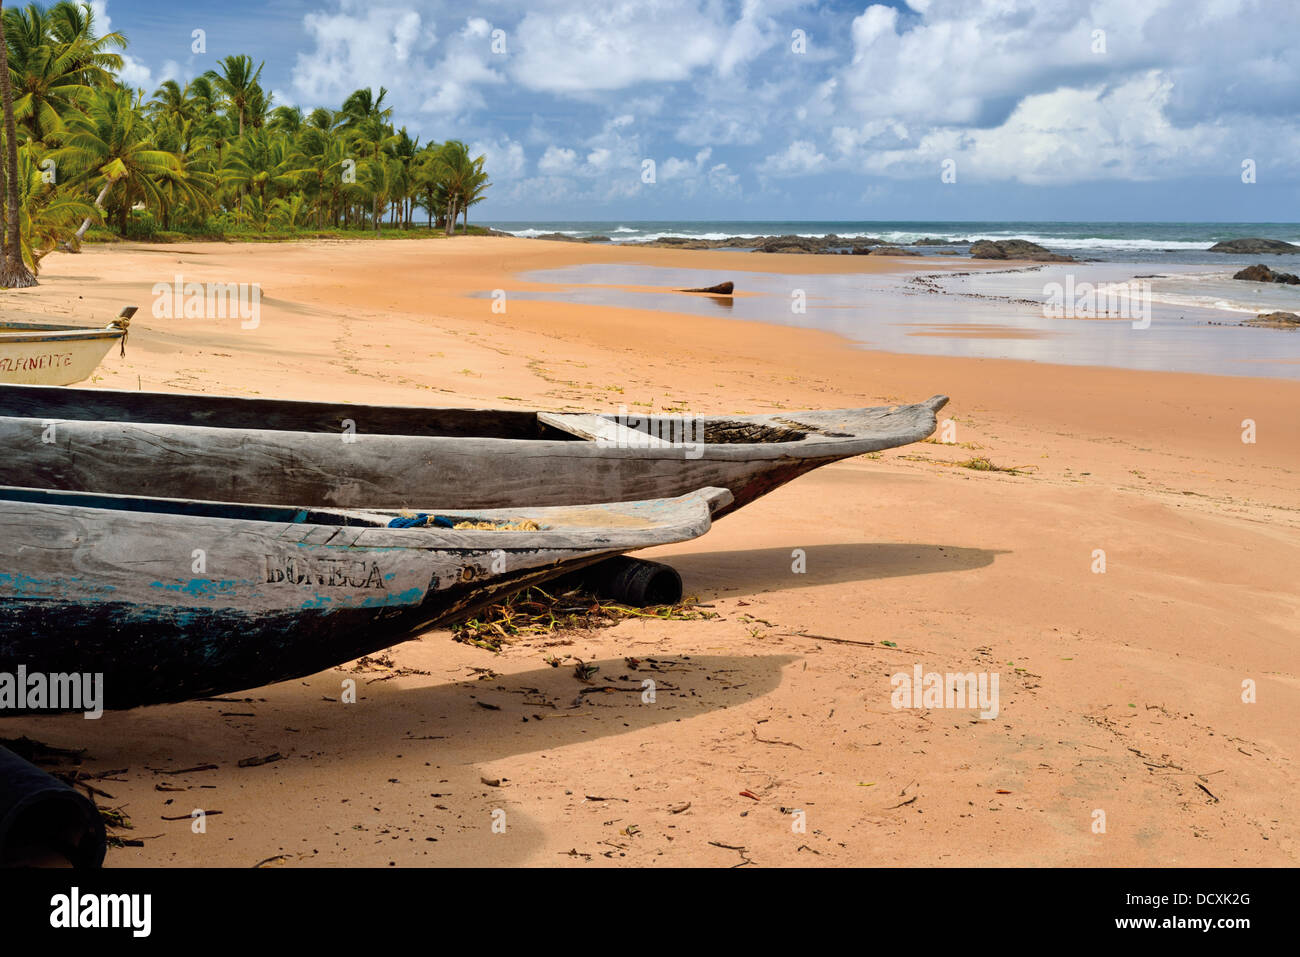 Brazil, Bahia: Dugout canoes at beach Praia Busca Vida in Camacari near Salvador Stock Photo